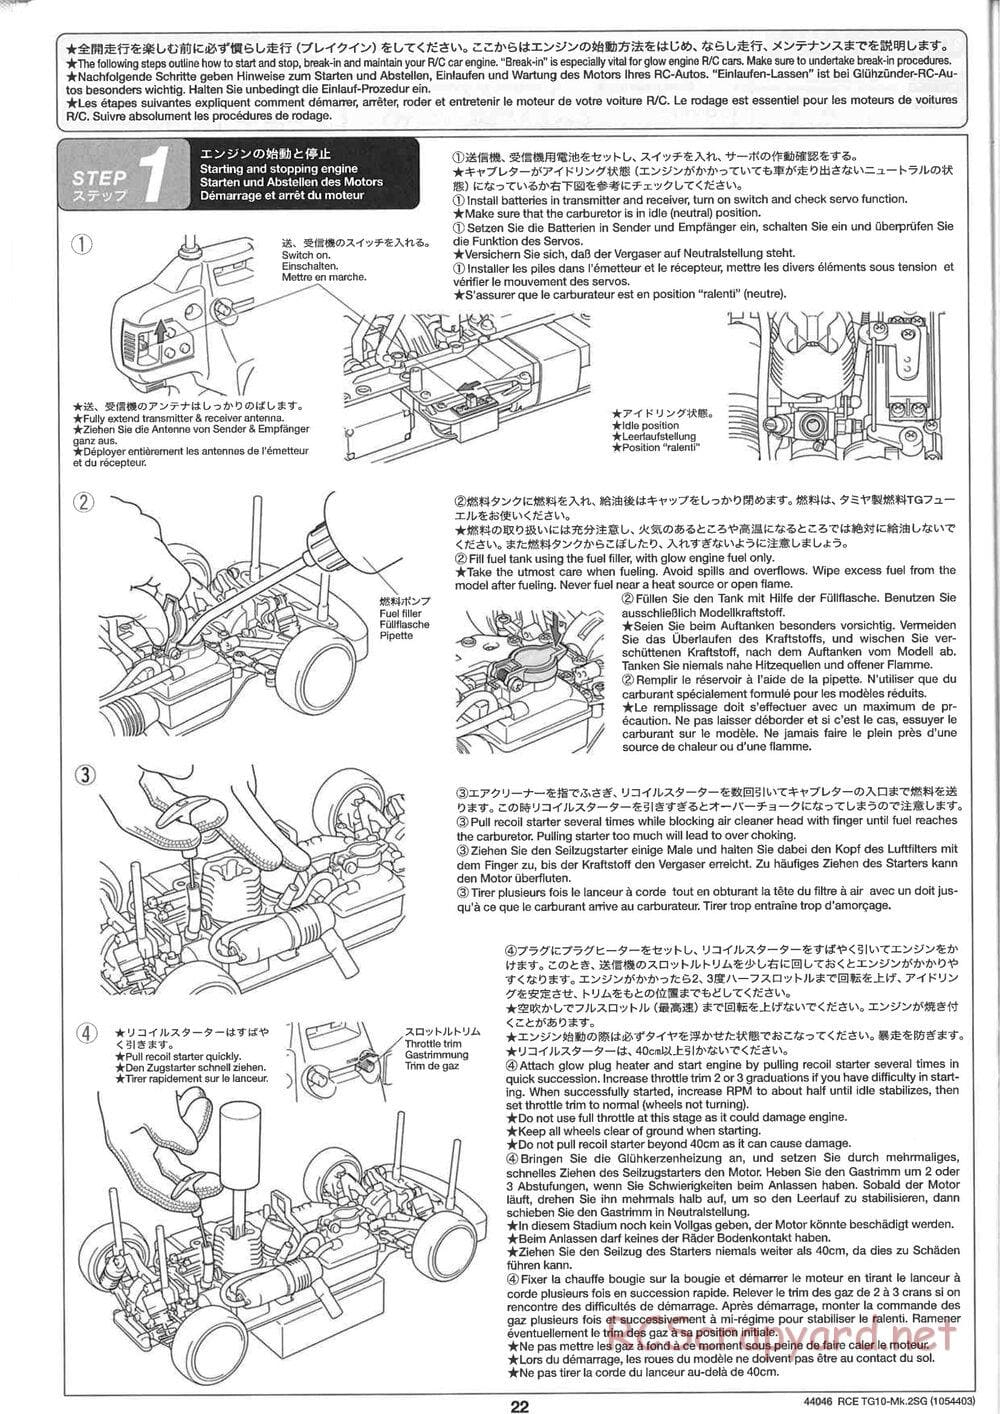 Tamiya - TG10 Mk.2SG Chassis - Manual - Page 22